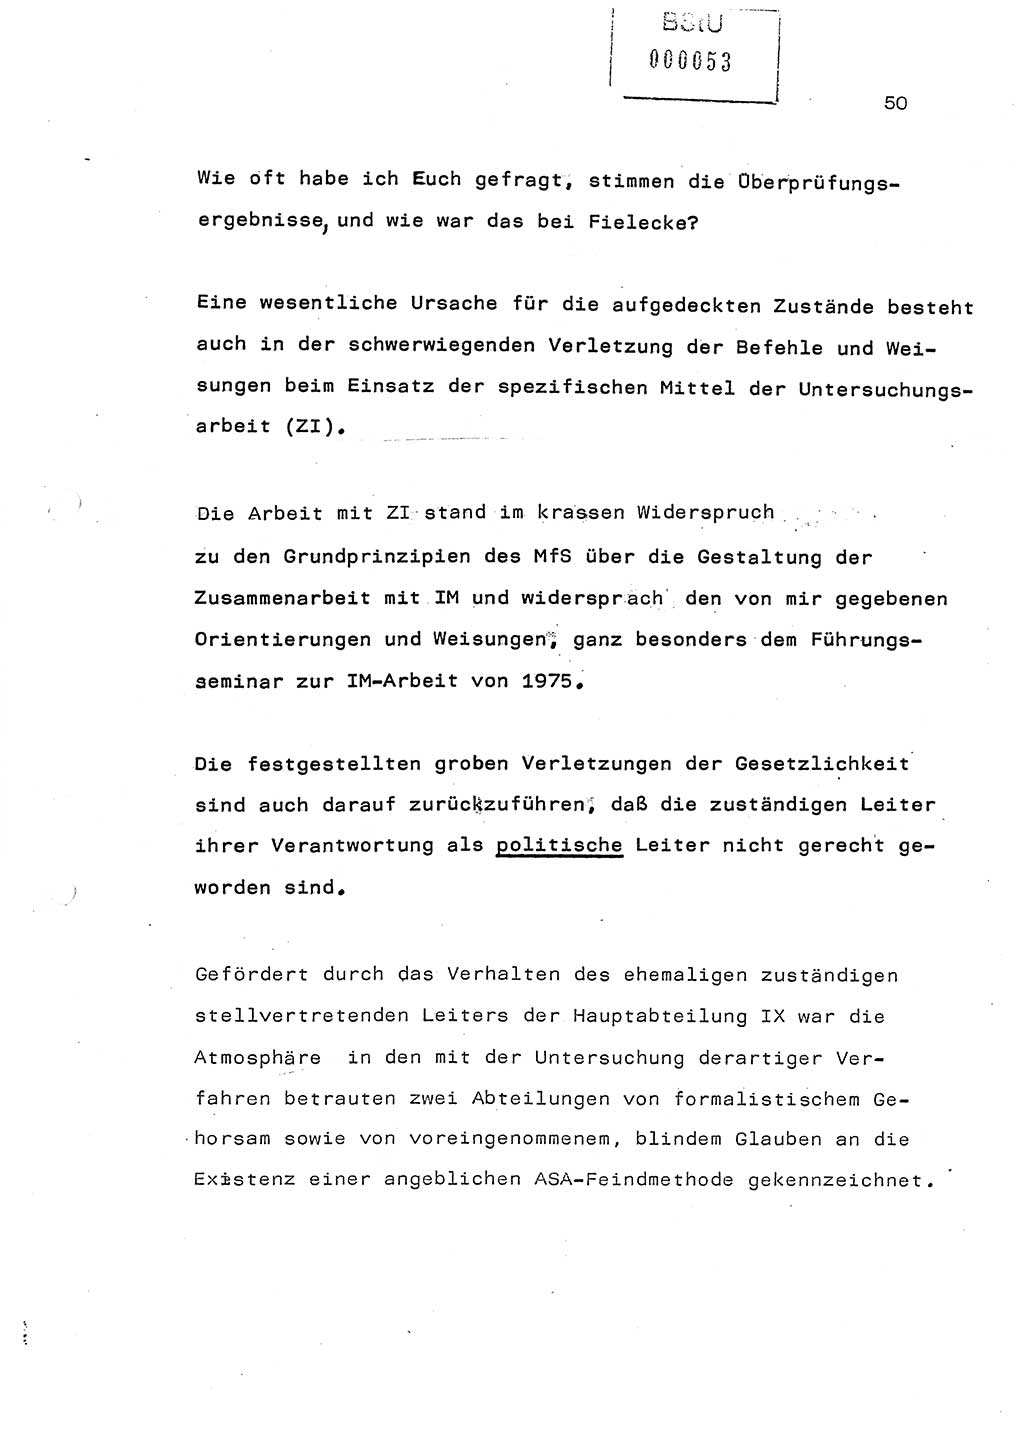 Referat (Generaloberst Erich Mielke) auf der Zentralen Dienstkonferenz am 24.5.1979 [Ministerium für Staatssicherheit (MfS), Deutsche Demokratische Republik (DDR), Der Minister], Berlin 1979, Seite 50 (Ref. DK DDR MfS Min. /79 1979, S. 50)